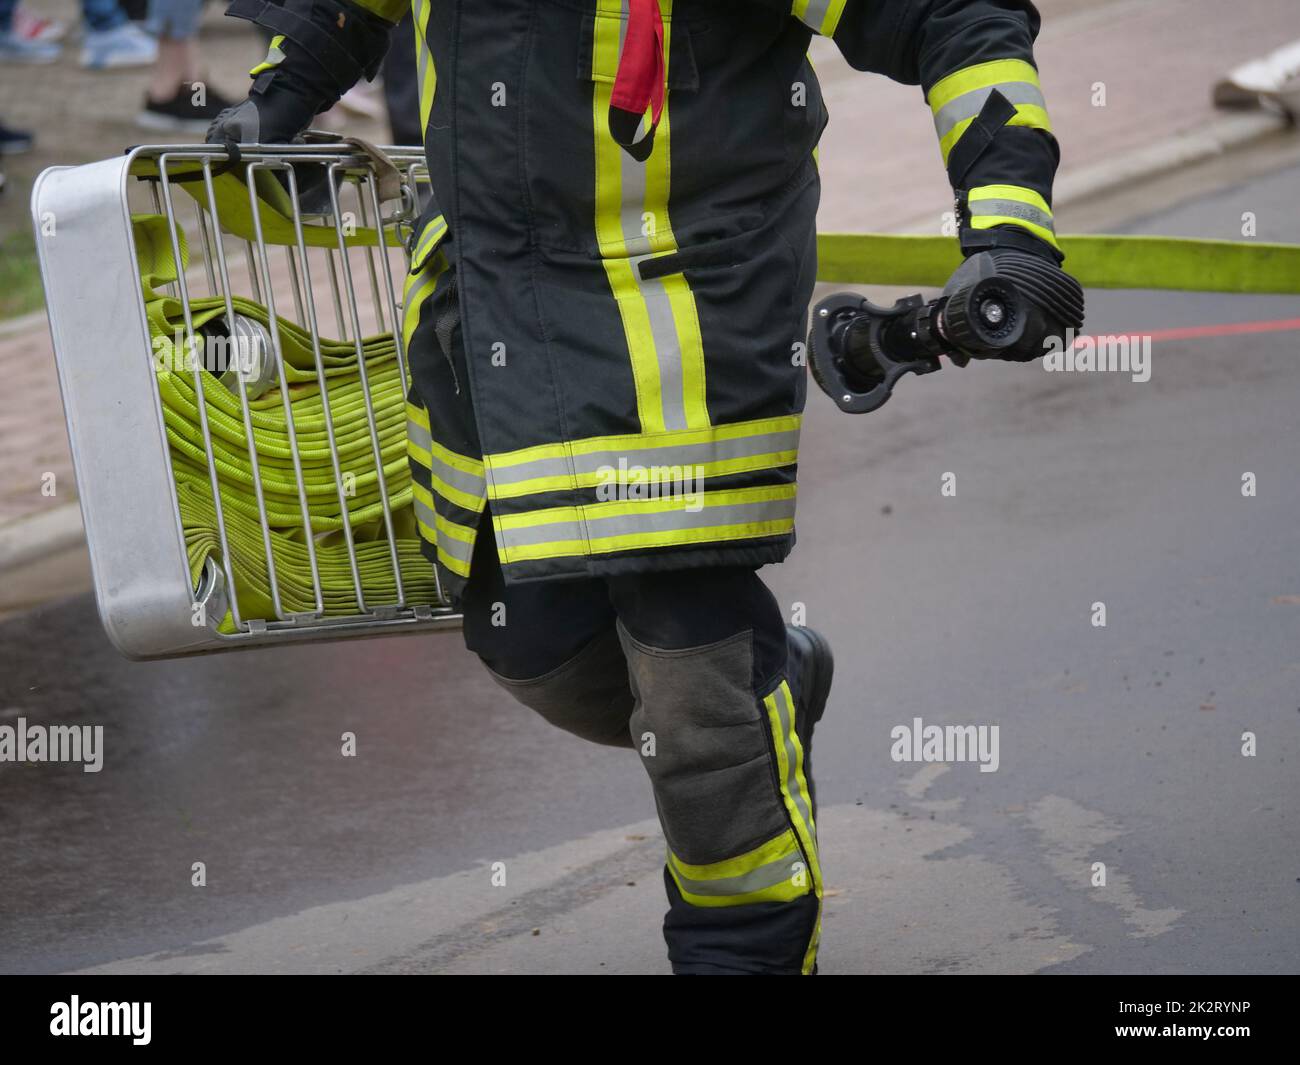 Pompiers Allemagne dans diverses actions comme une image symbolique. Banque D'Images